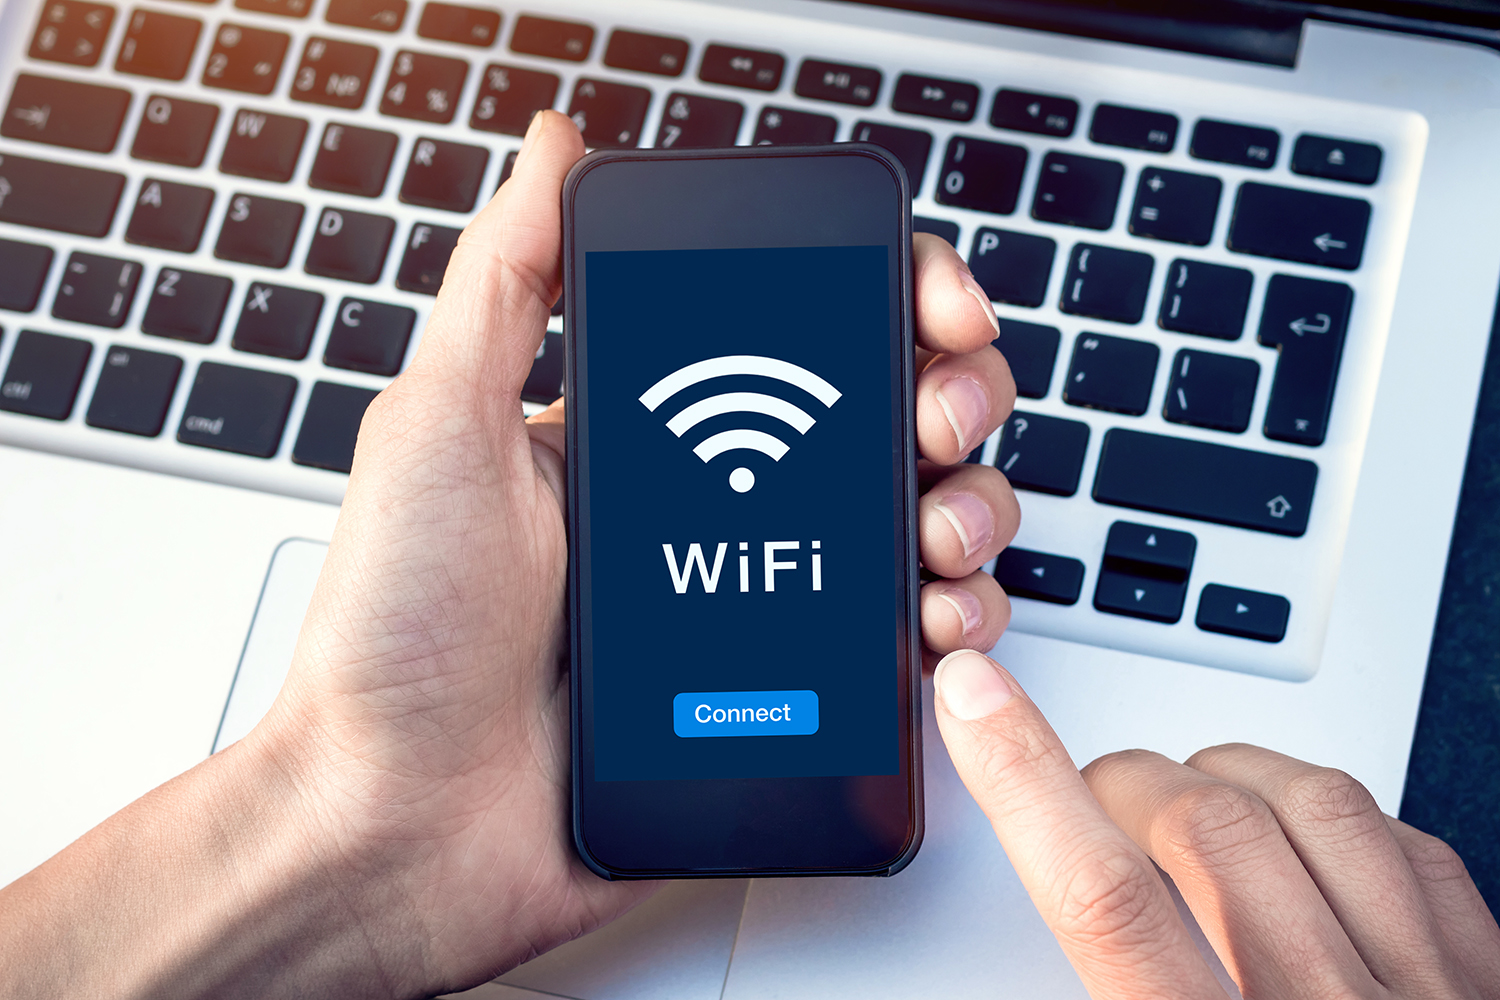 Día del Internauta: los expertos en ciberseguridad desaconsejan conectarse a redes wifi públicas